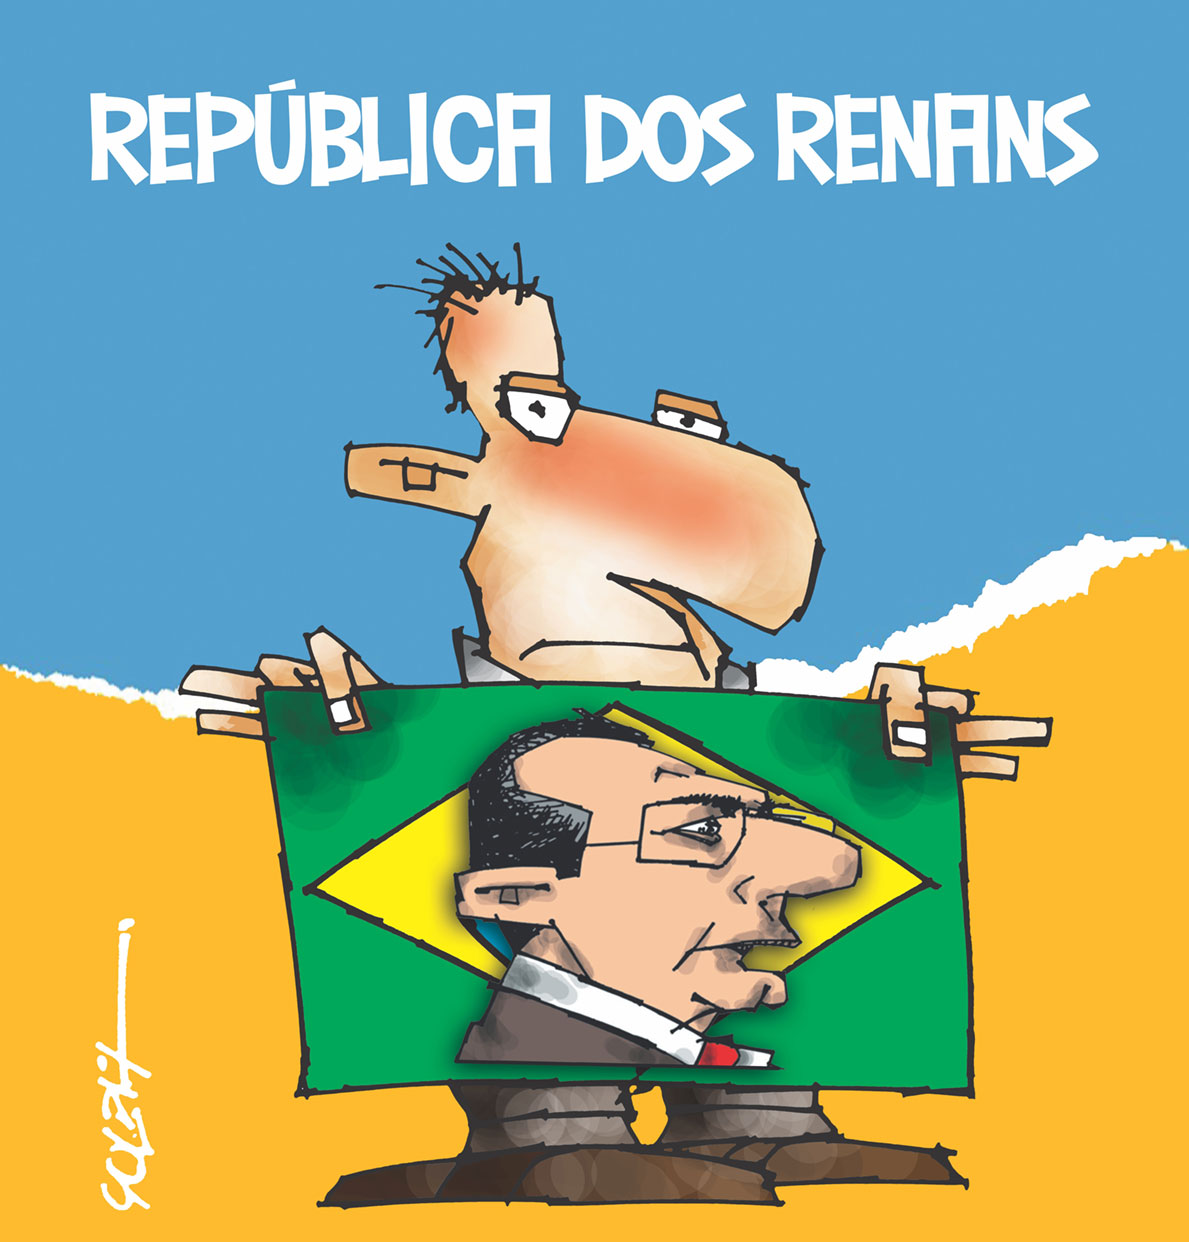 republica-dos-renans-6-12-2016